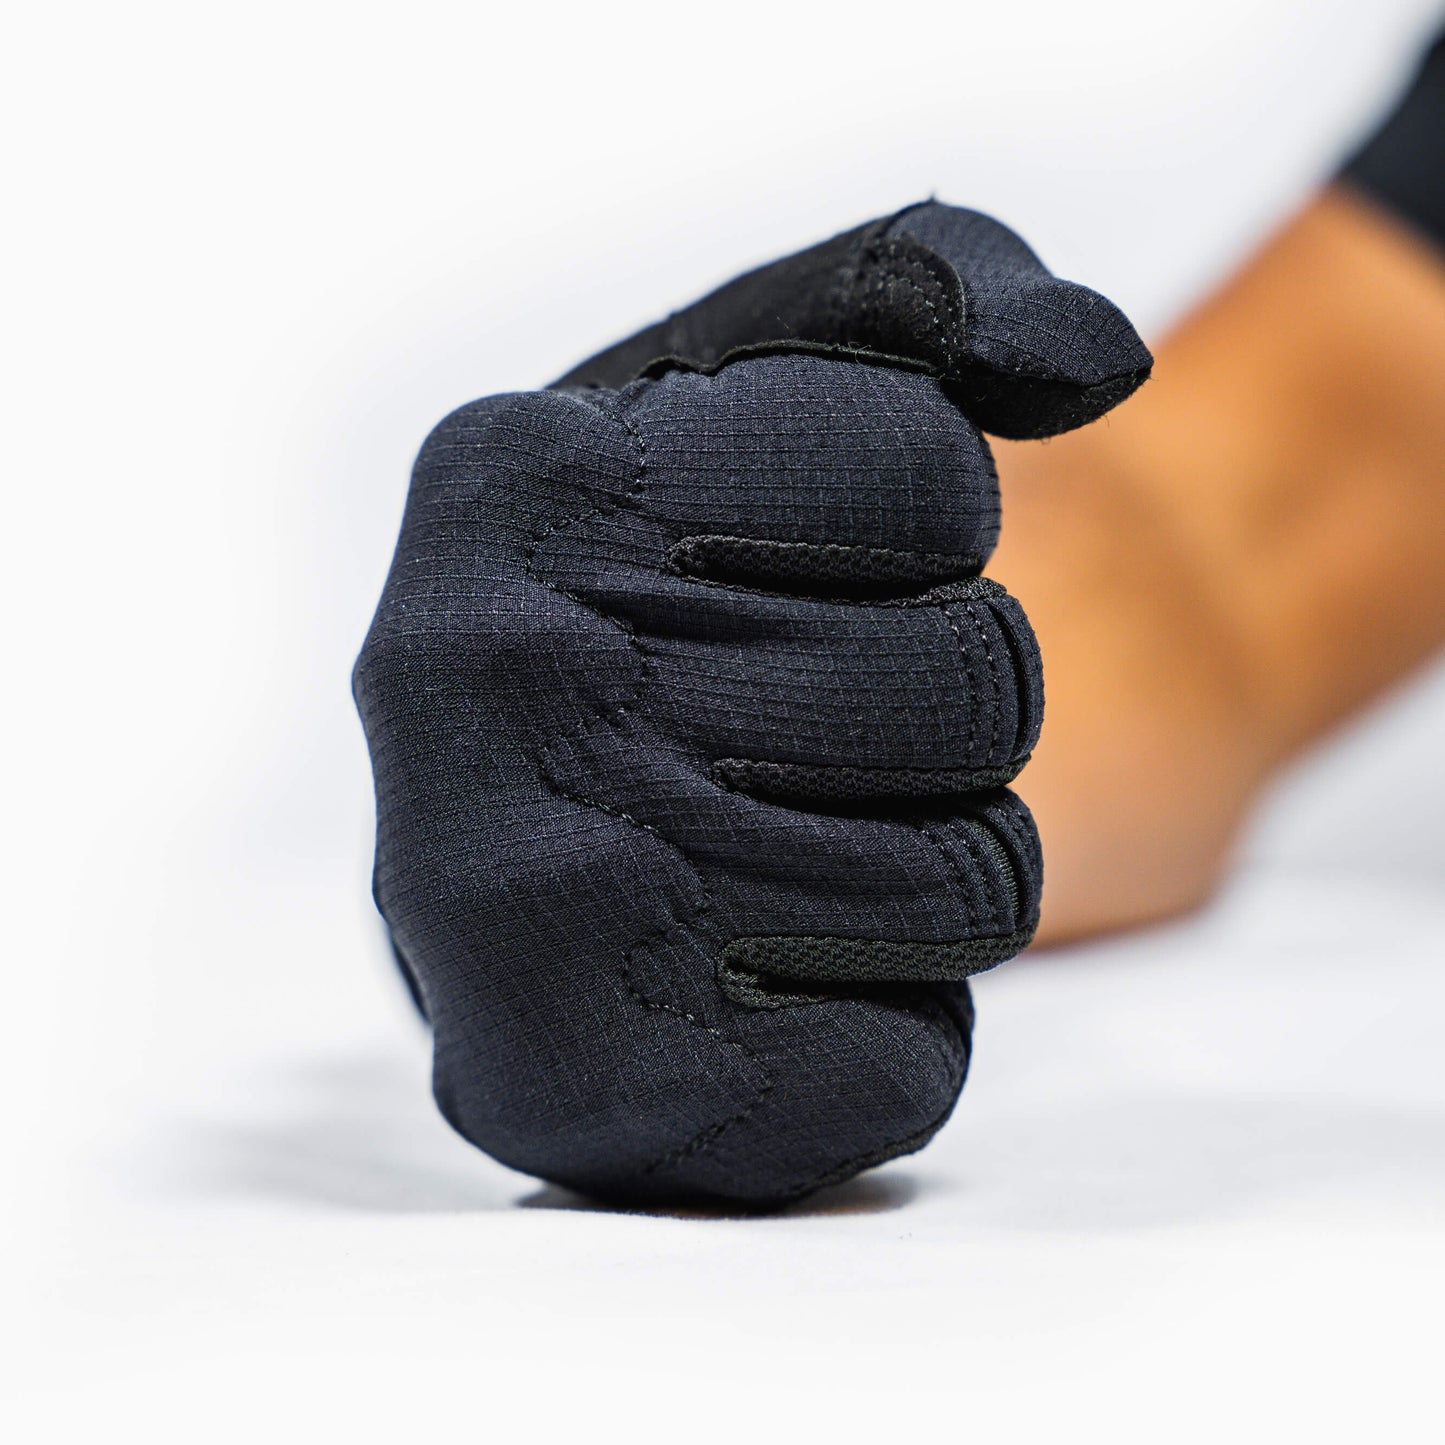 Stealth Series Moto Gloves